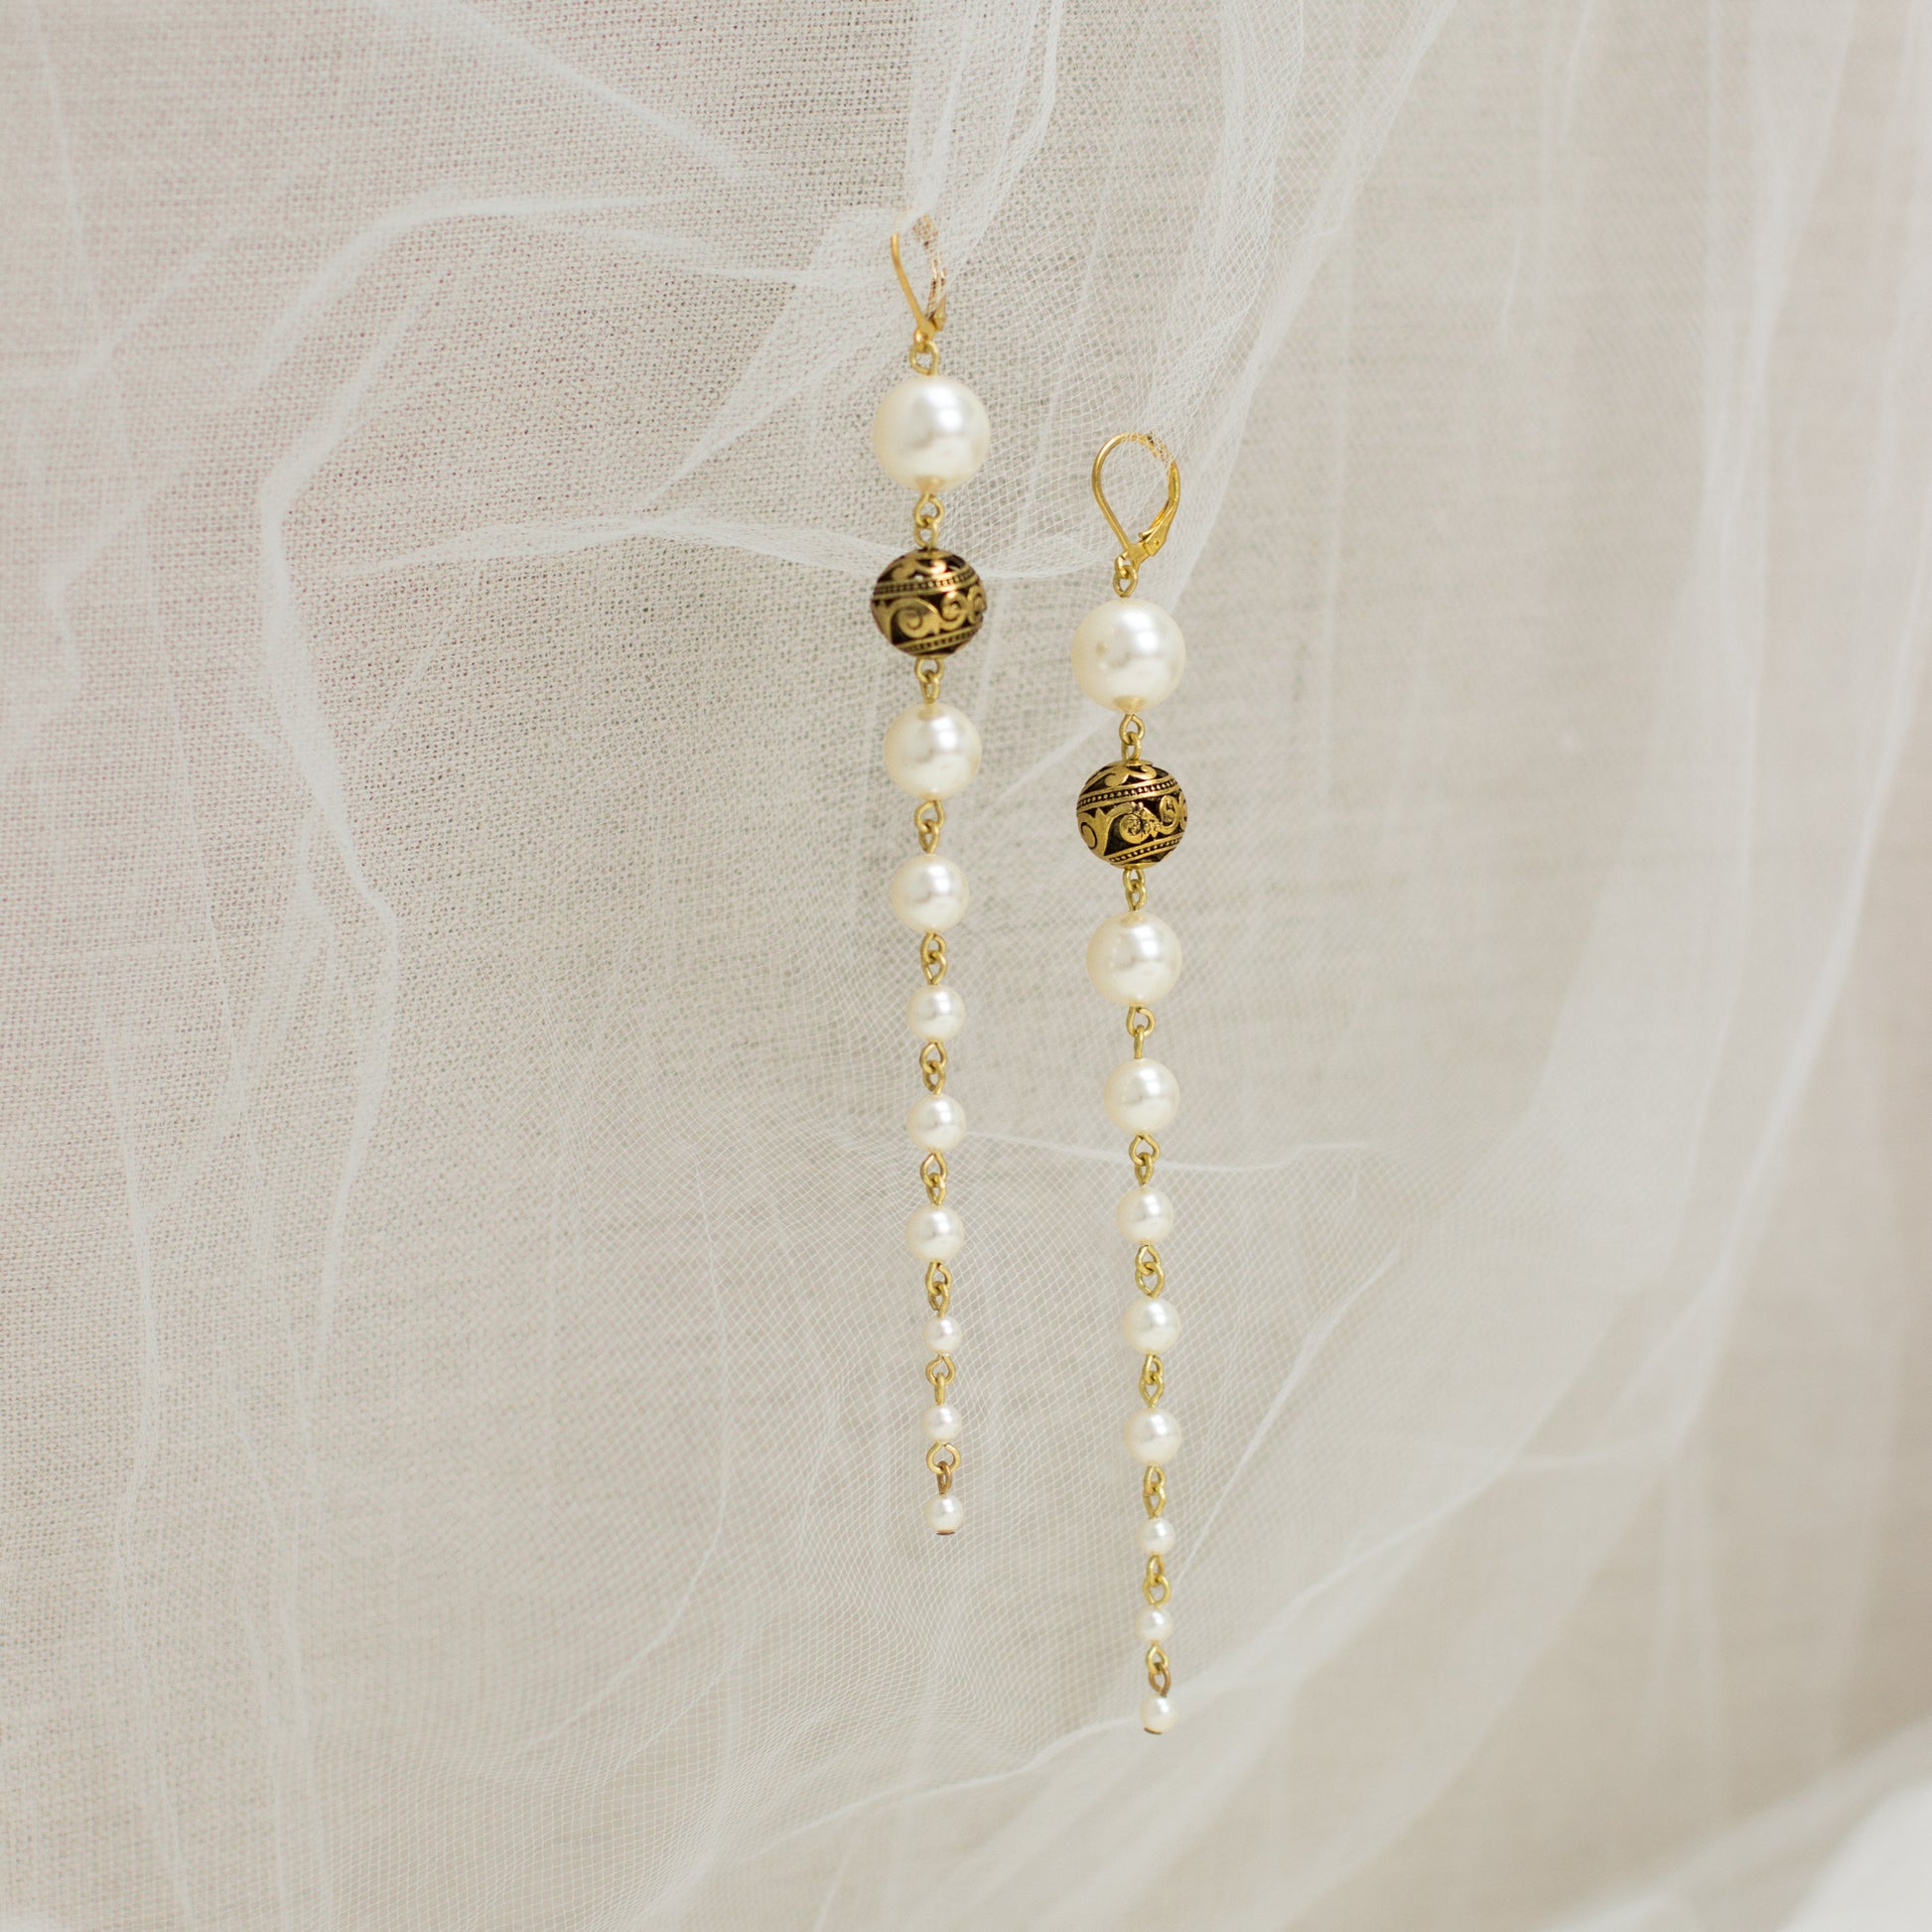 Buy online jewelry. Online boutique. Long Pearl earrings. Wedding earrings. Bridal jewelry. Ivory earrings. Handmade jewelry. Woman fashion bijouterie. OOAK accessories.